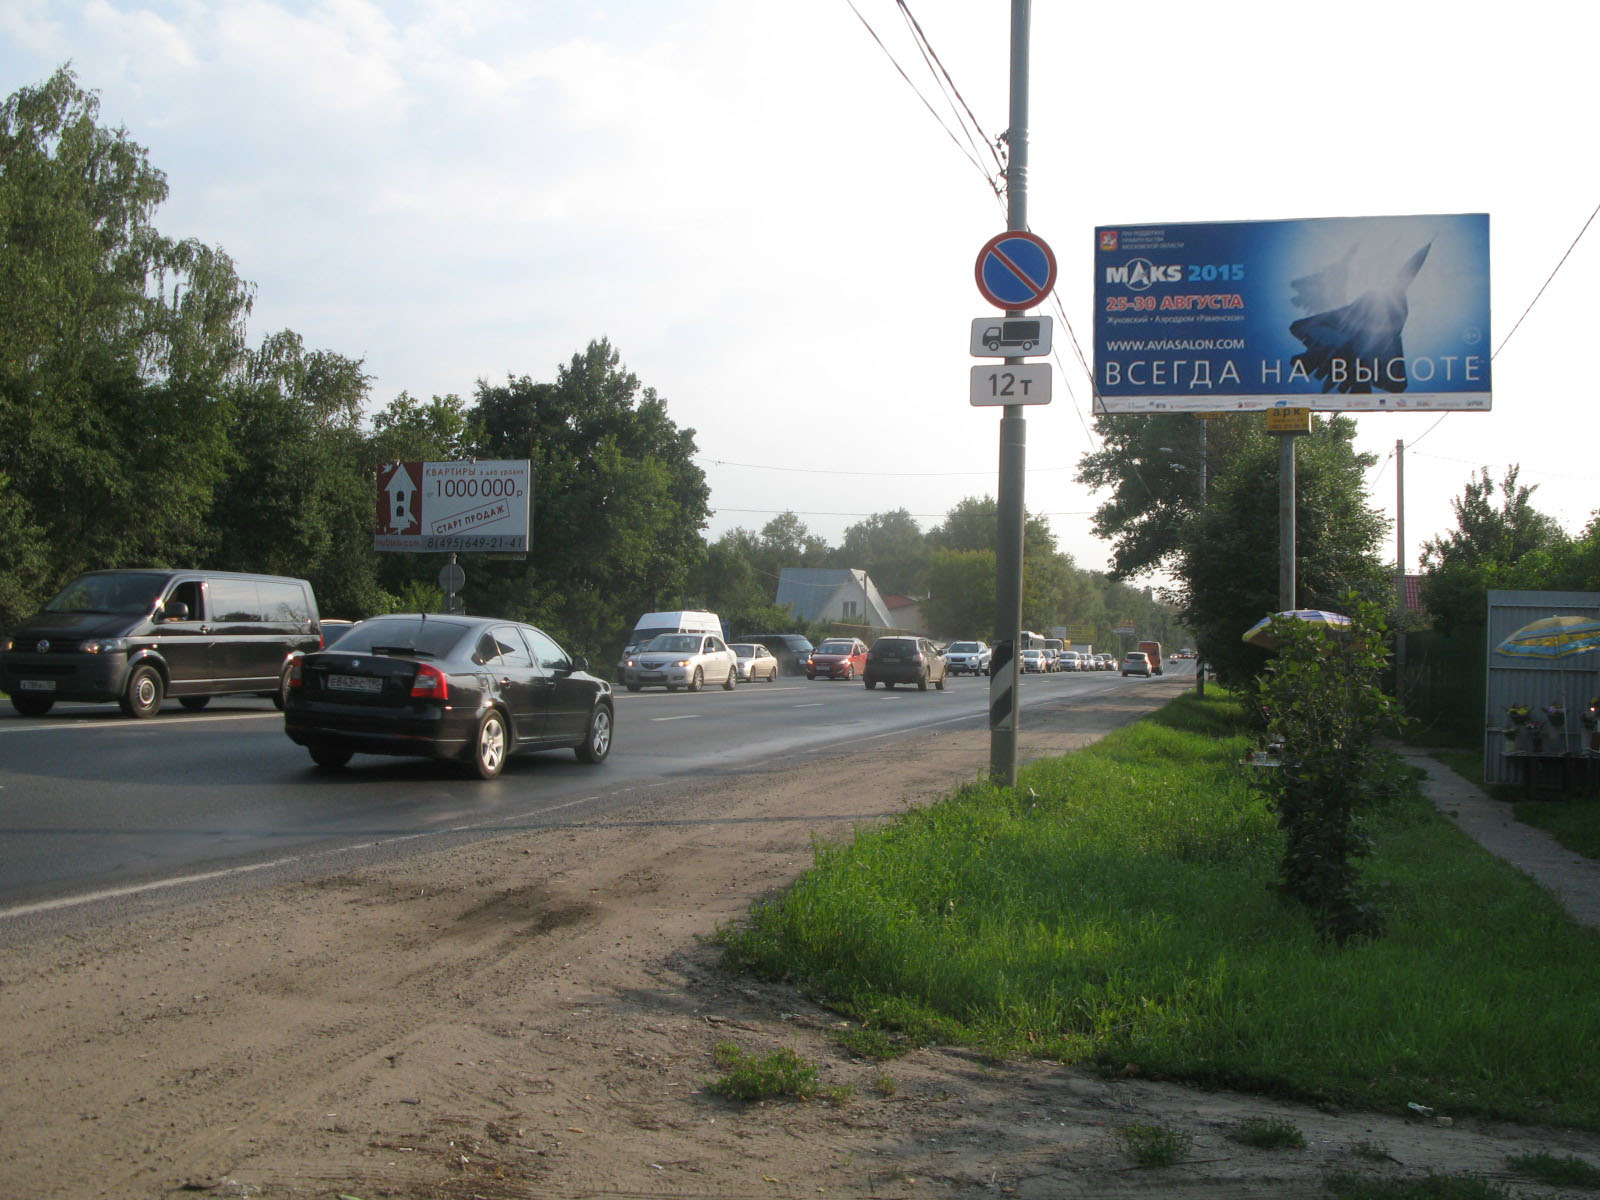 Щелковское ш., 25,9 км, (9,9 км от МКАД), слева, г.Щелково